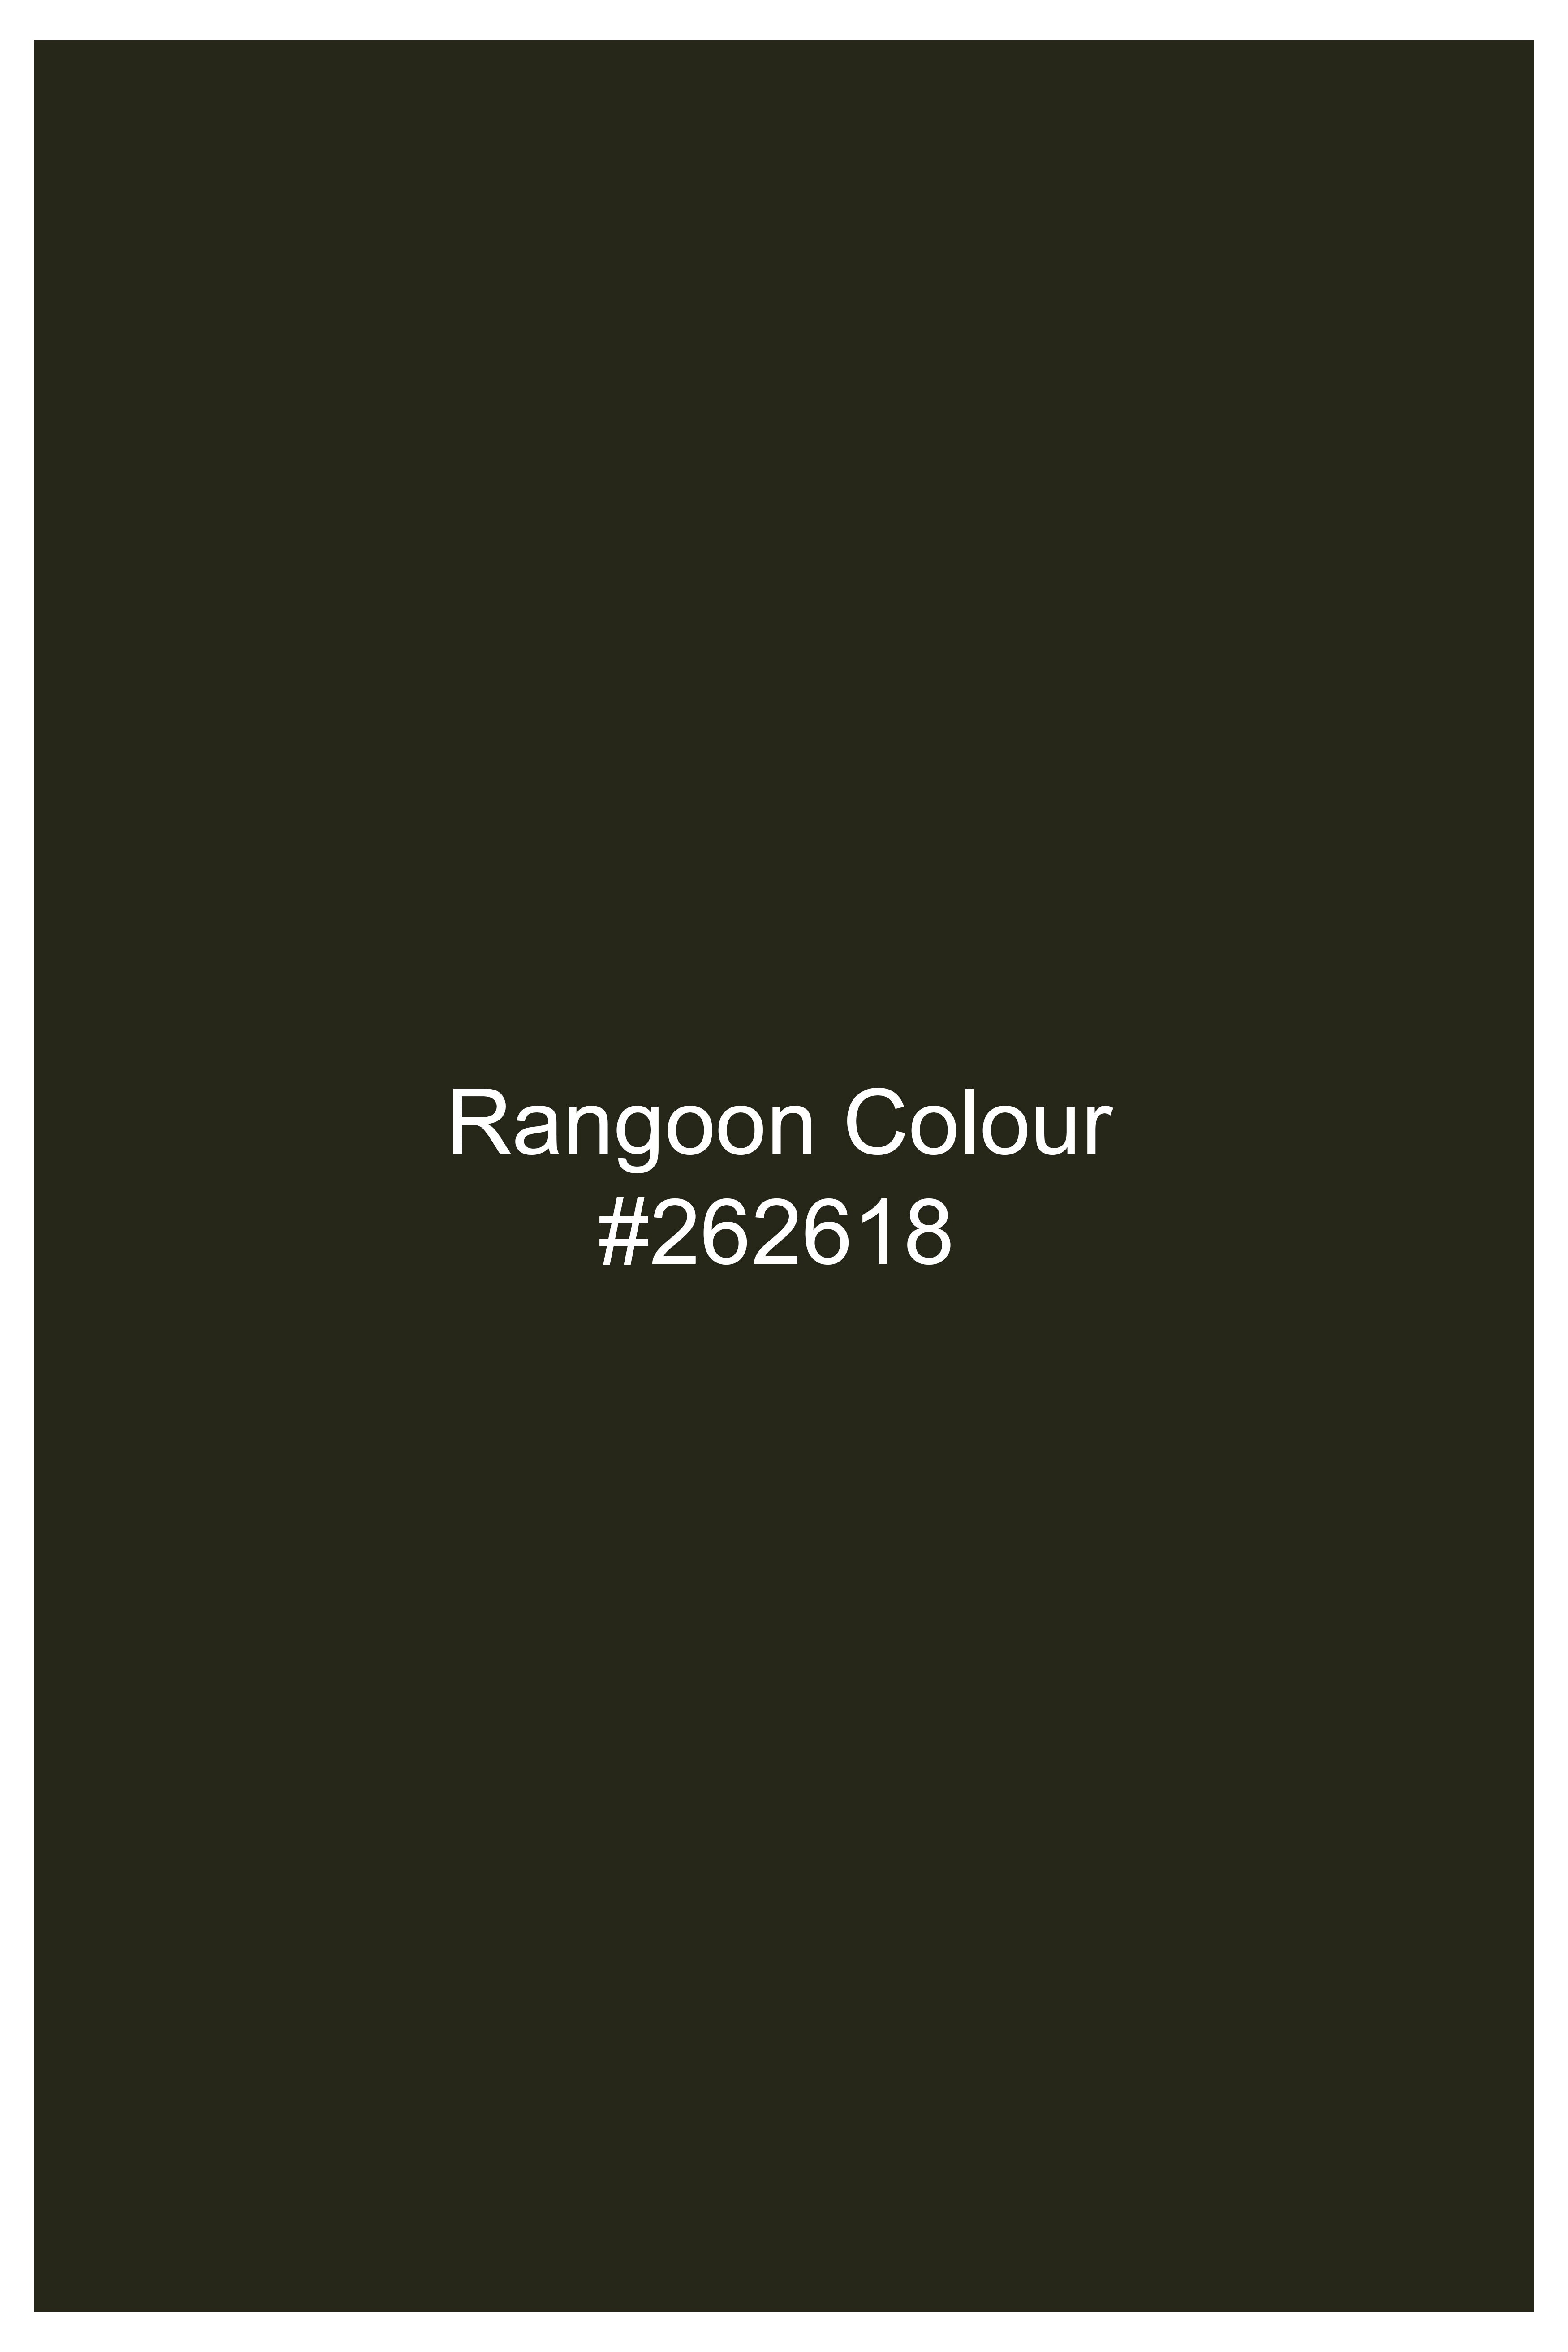 Rangoon Green Single Breasted Velvet Blazer BL3024-SB-36, BL3024-SB-38, BL3024-SB-40, BL3024-SB-42, BL3024-SB-44, BL3024-SB-46, BL3024-SB-48, BL3024-SB-50, BL3024-SB-52, BL3024-SB-54, BL3024-SB-56, BL3024-SB-58, BL3024-SB-60